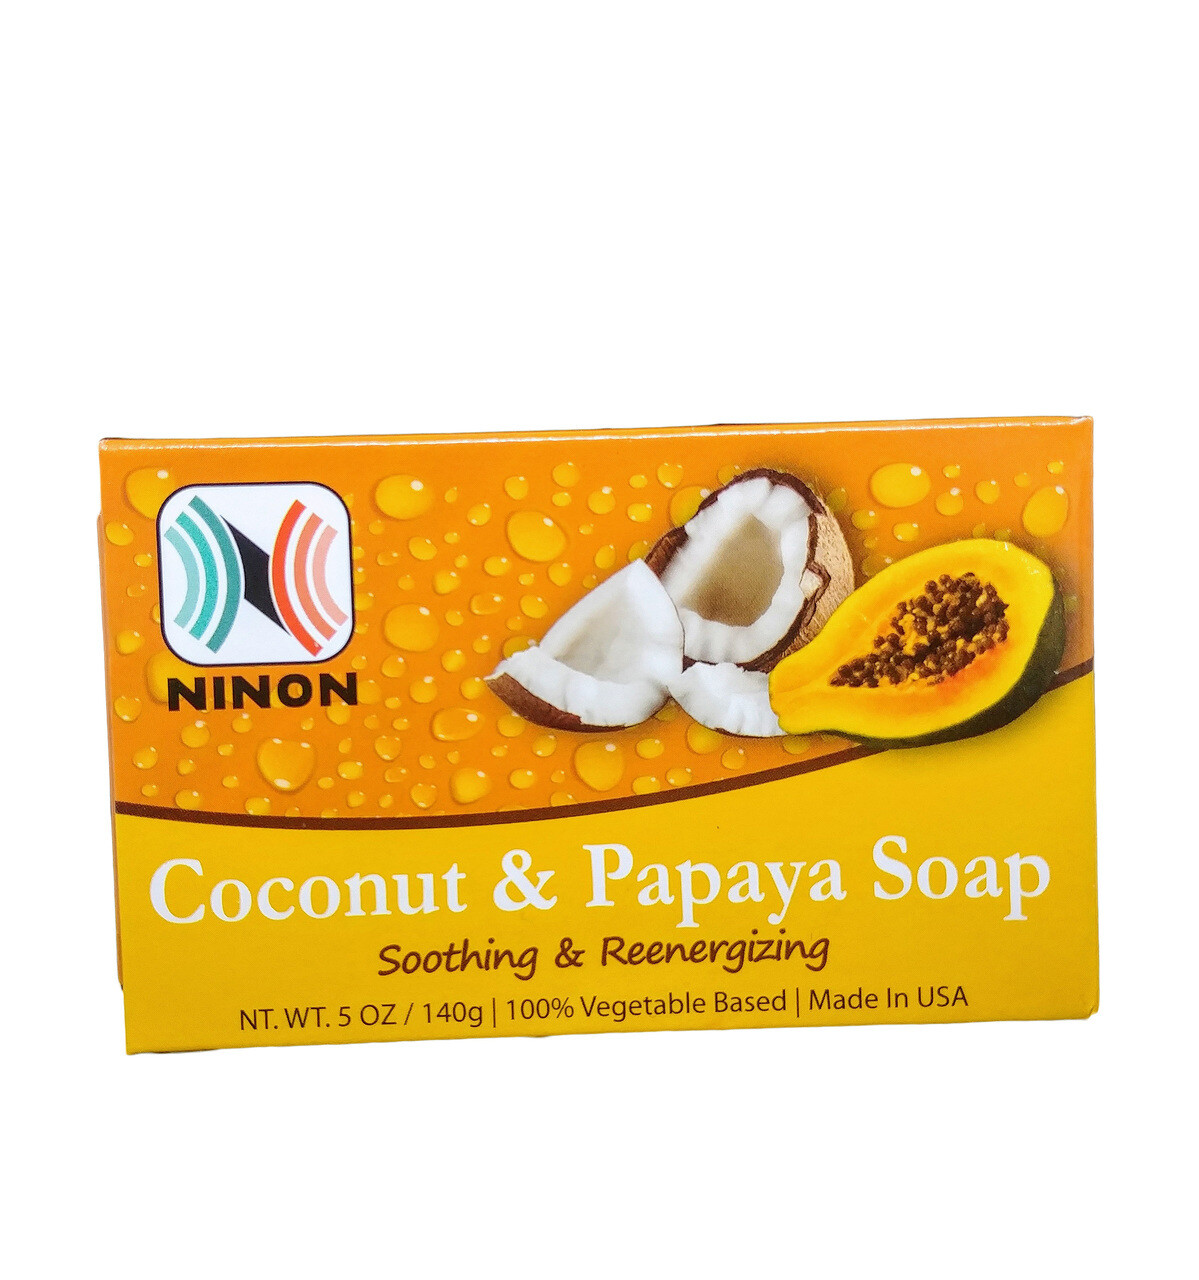 COCONUT & PAPAYA SOAP